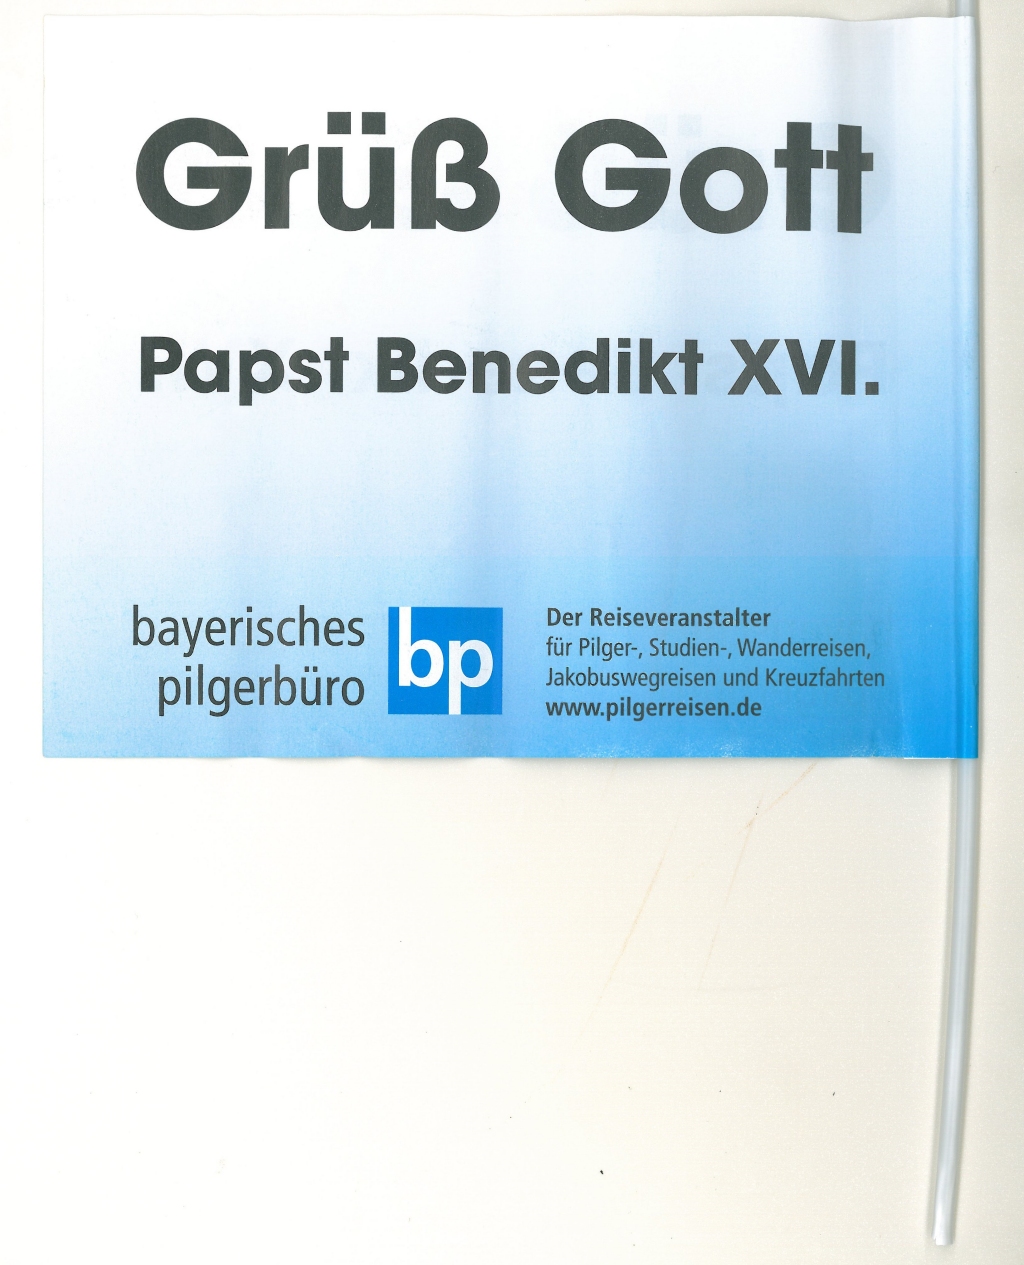 Papierfähnchen anlässlich der Pastoralreise Benedikts XVI. in seine alte Heimat Bayern im September 2006